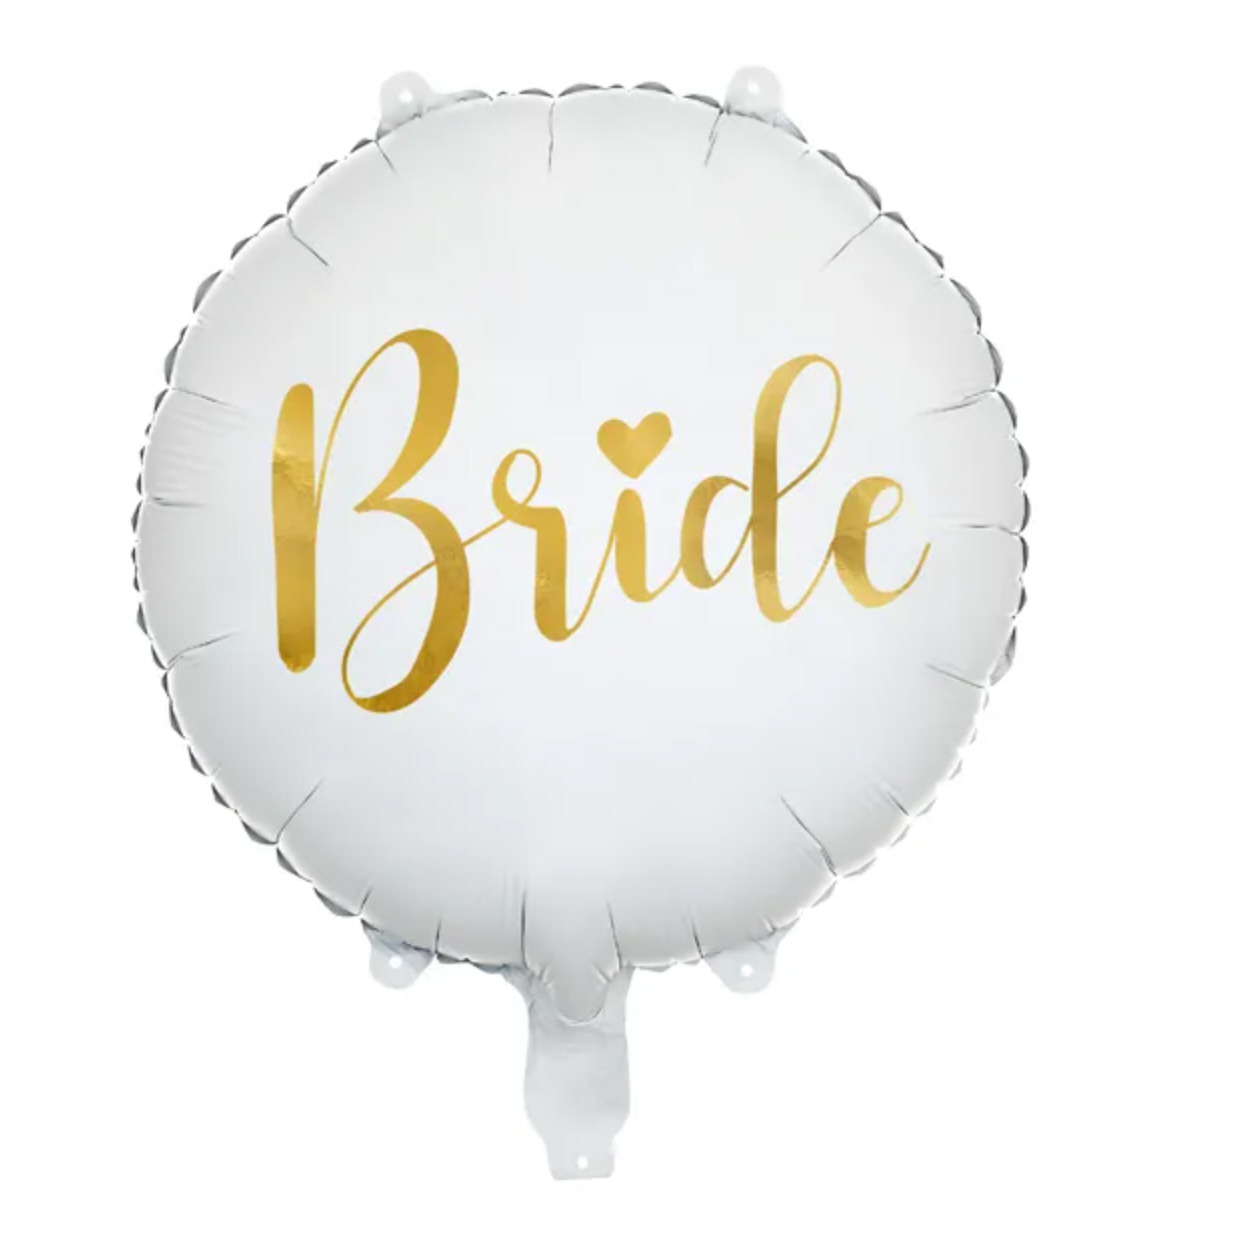 Folien-Luftballon BRIDE 45cm weiß gold 1 Stück 